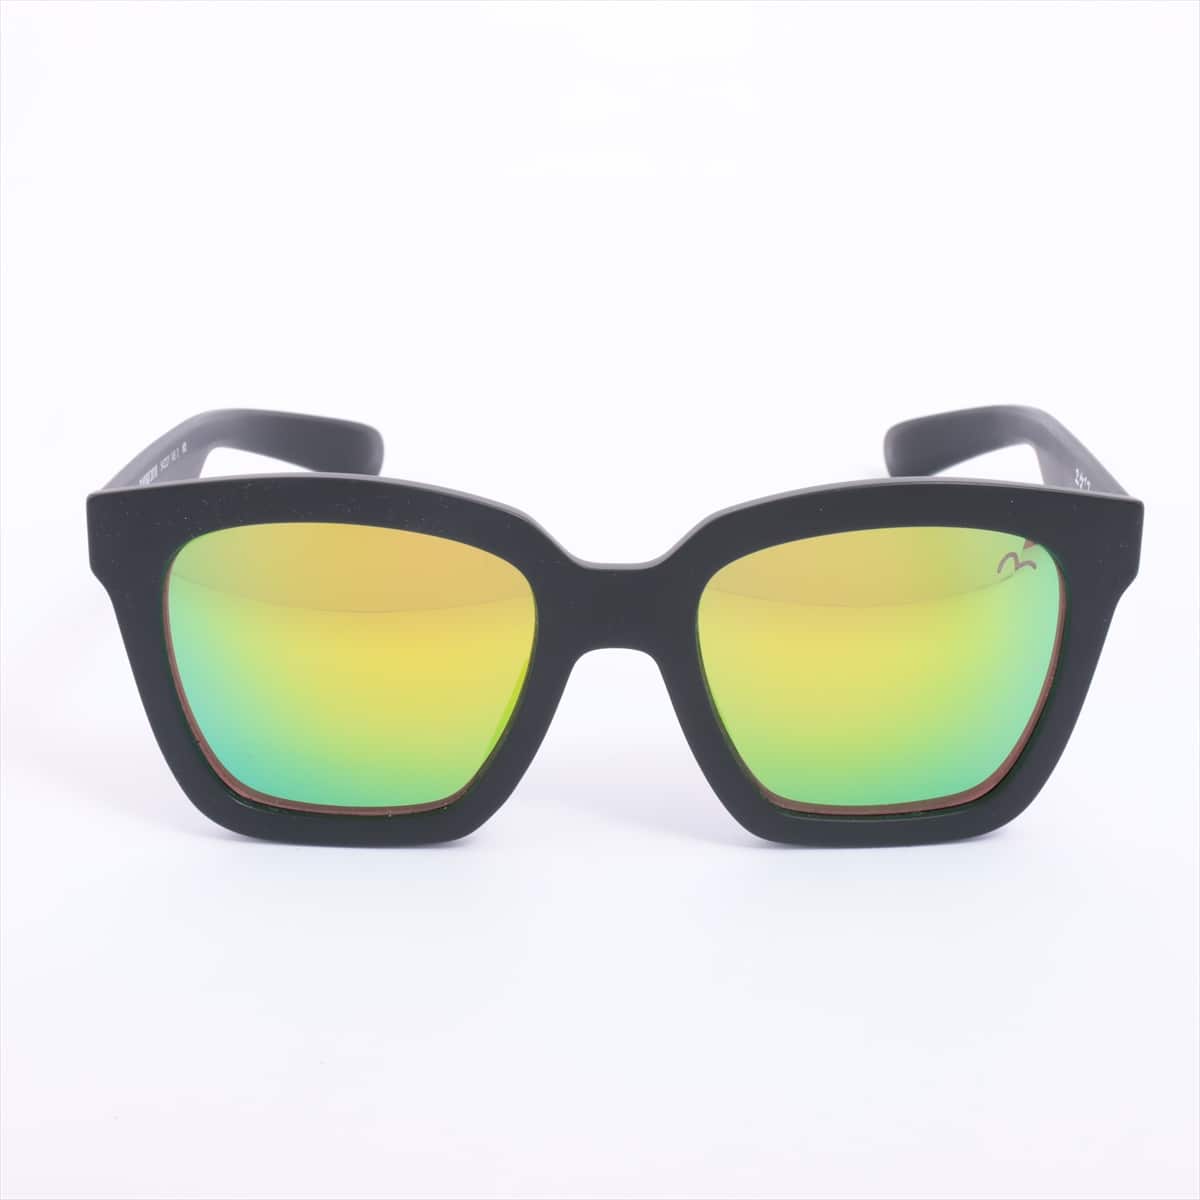 Evis Sunglasses Plastic